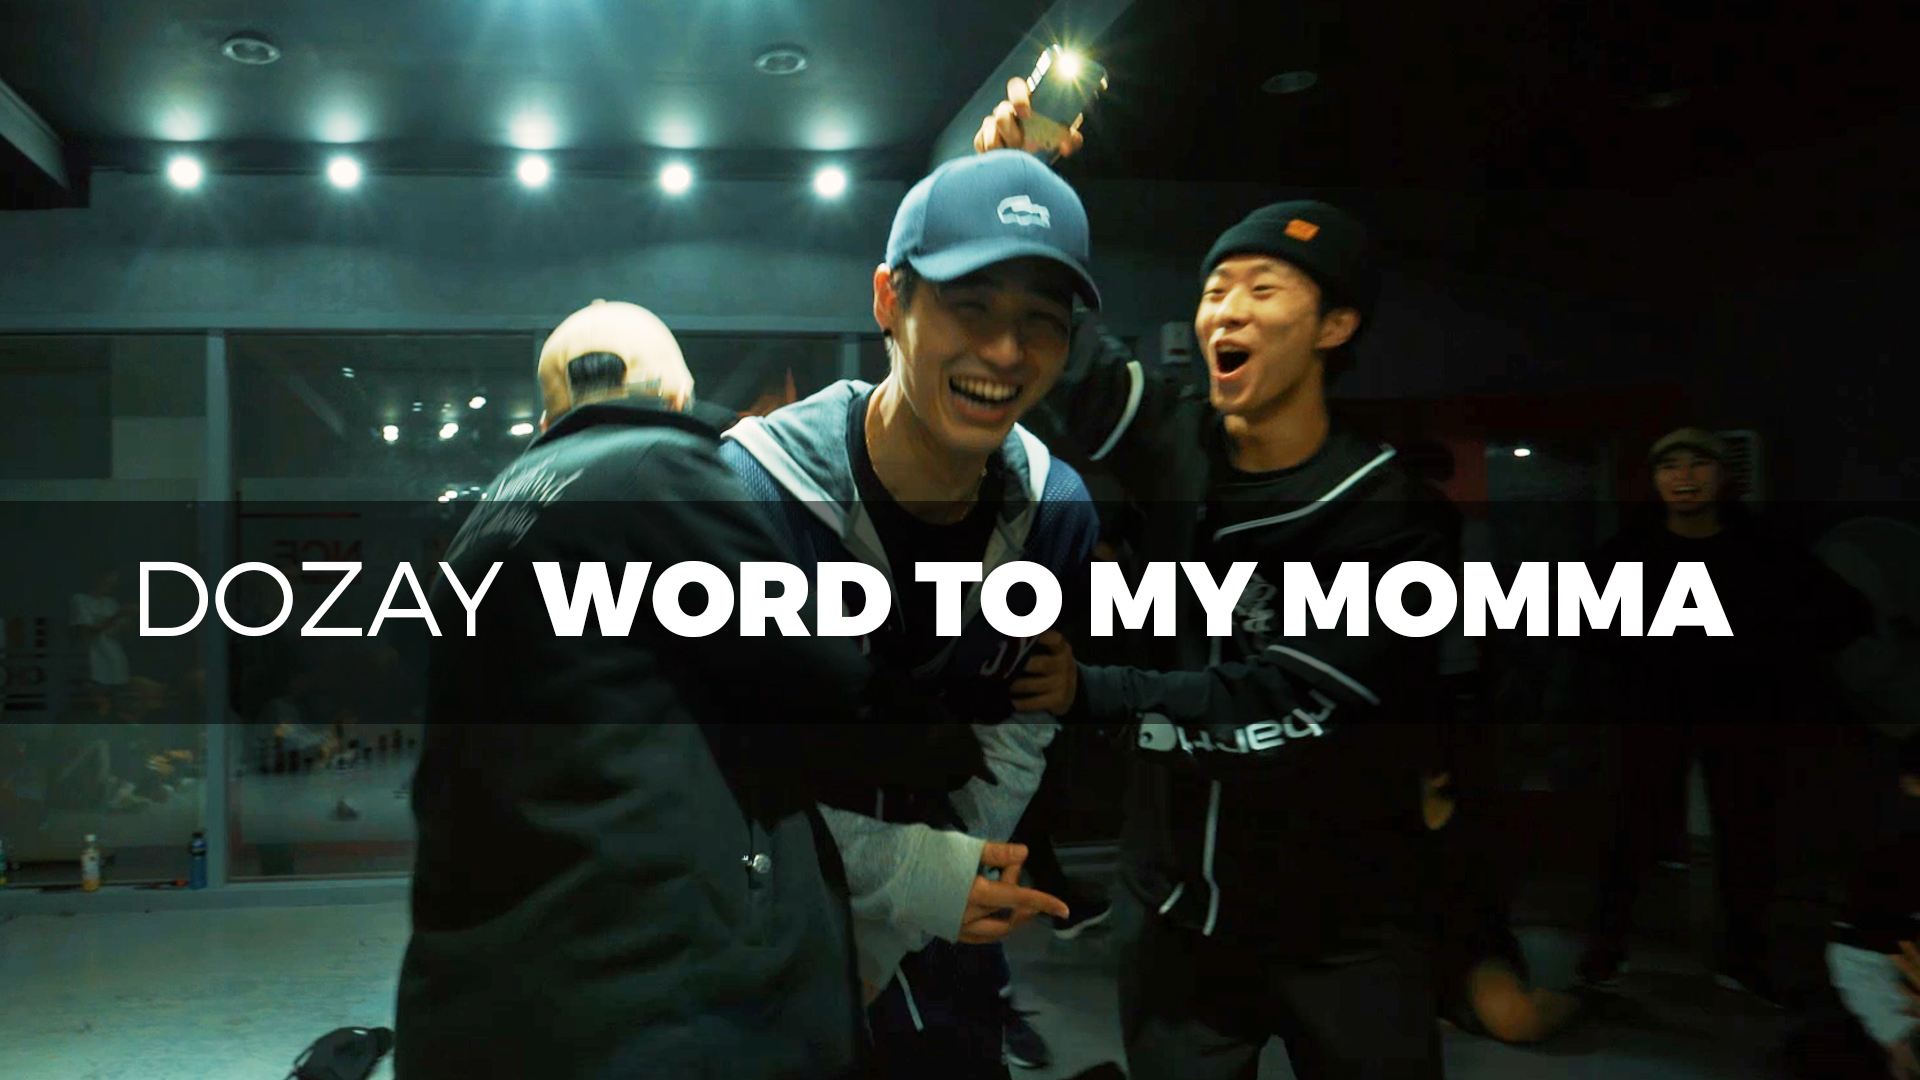 Dozay – Word to my momma (Dance. JayB)